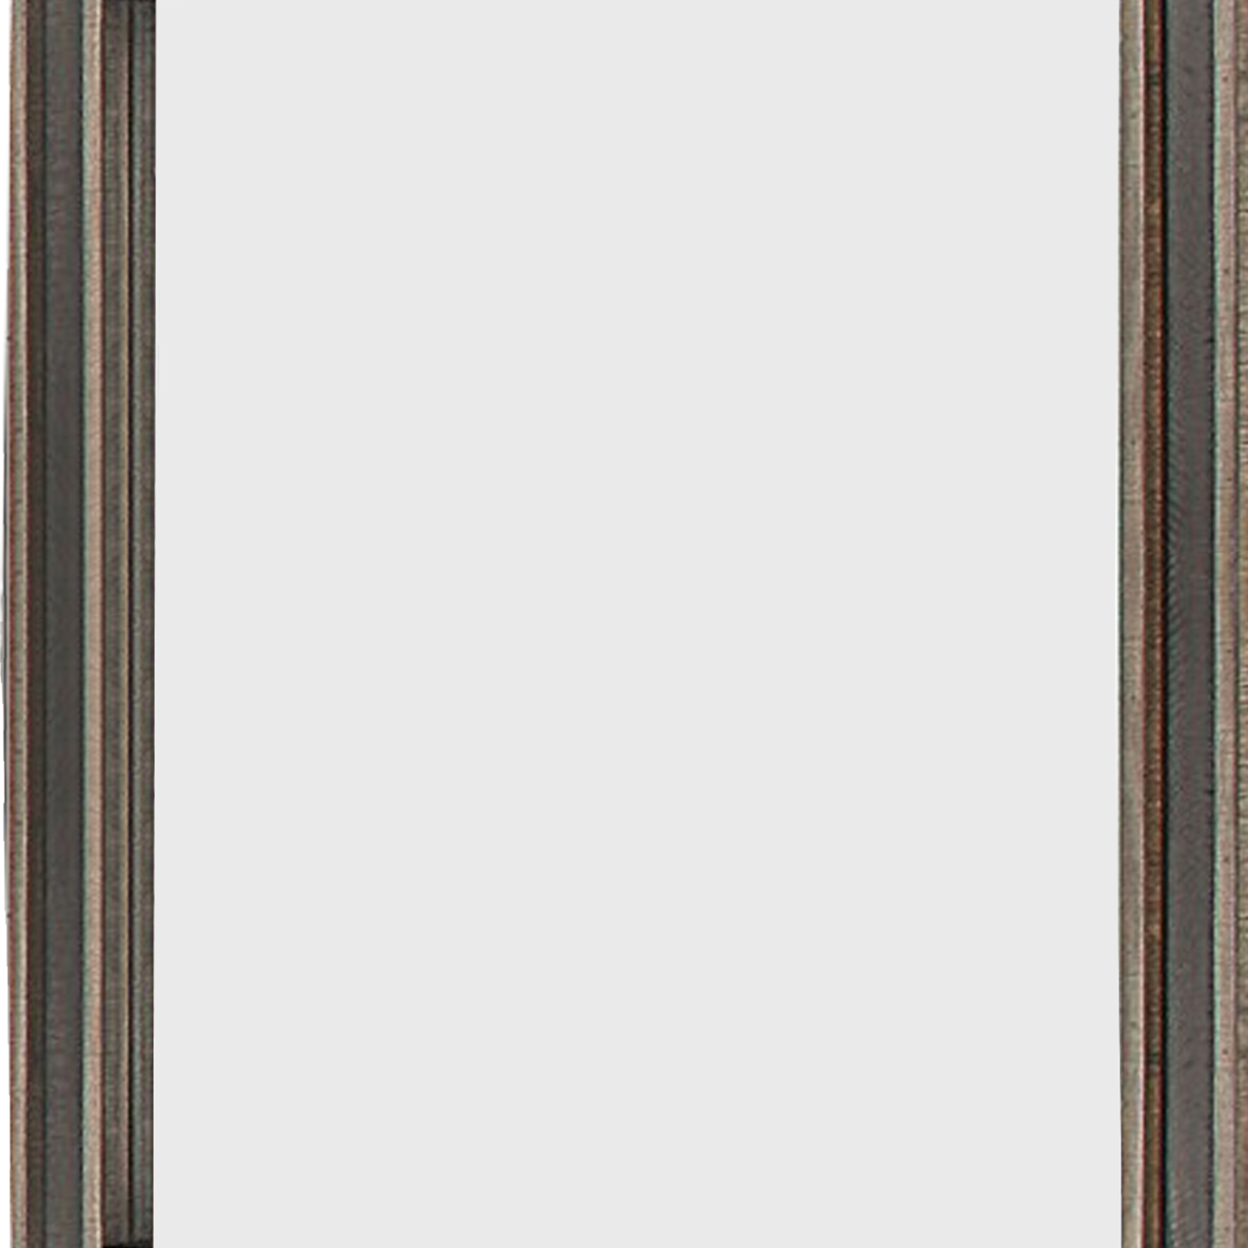 Modern Wooden Frame Dresser Mirror With Plank Design, Rustic And Dark Brown- Saltoro Sherpi